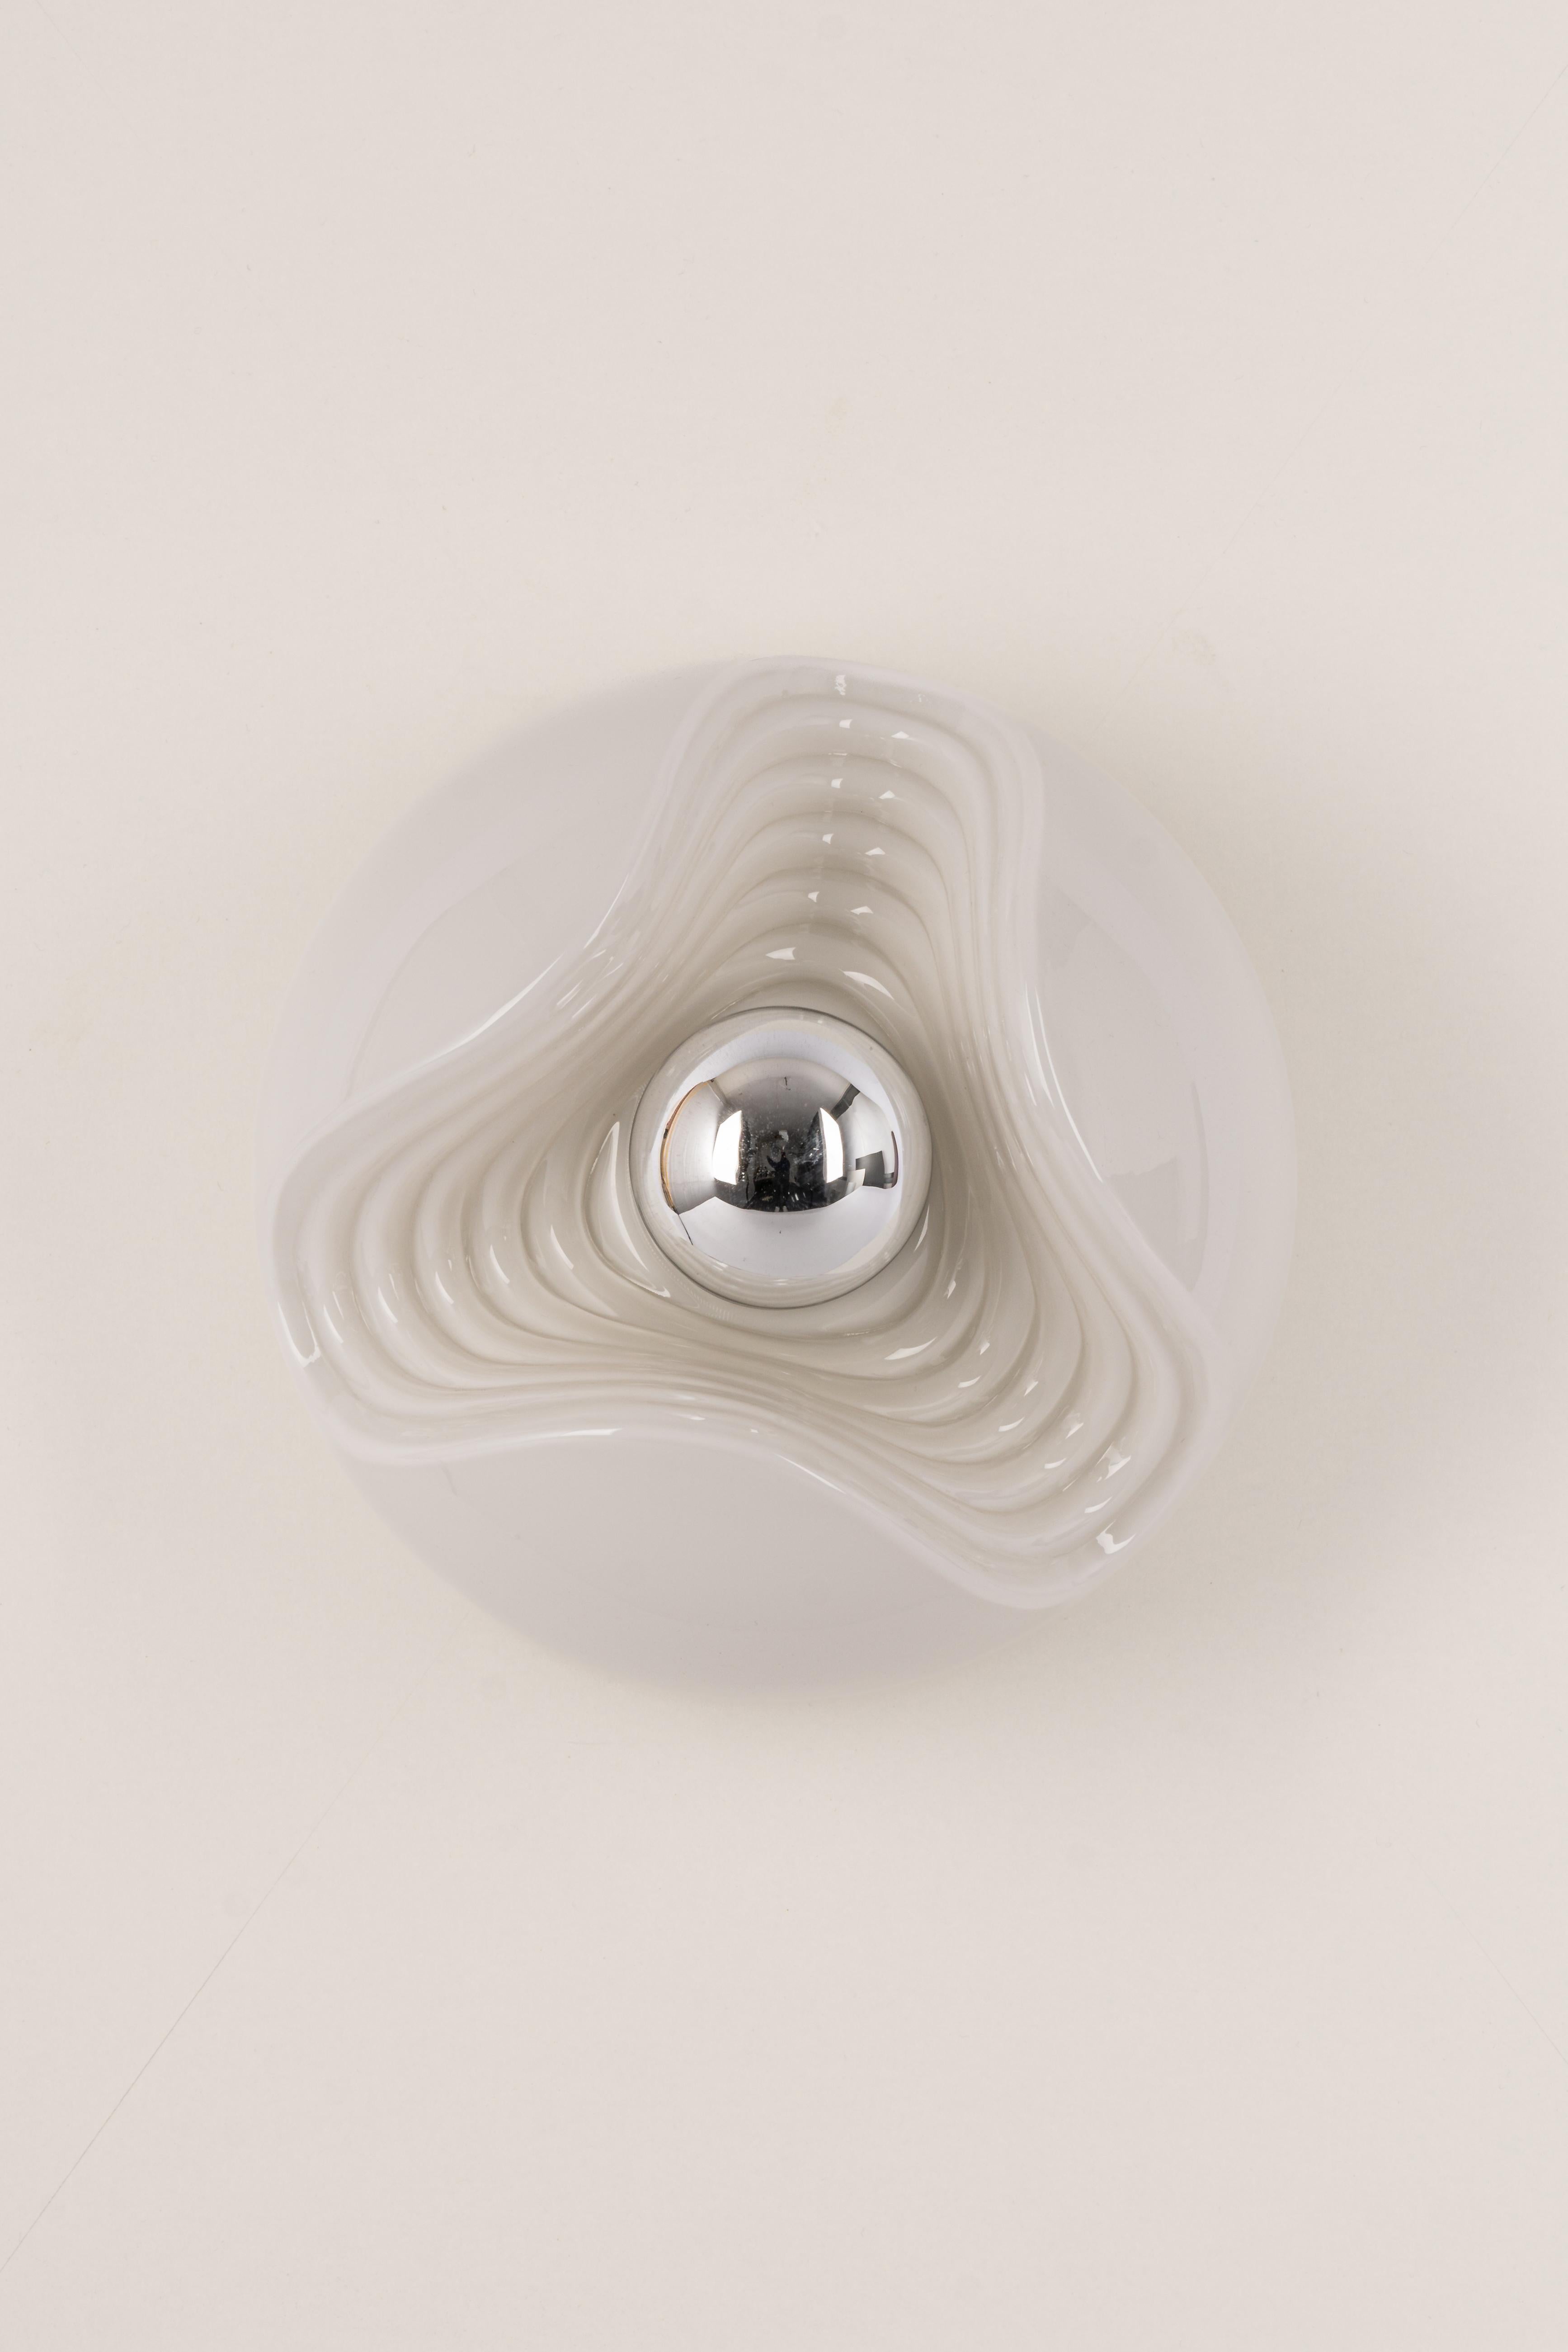 Eine besondere runde biomorphe Wandleuchte aus Opalglas, entworfen von Koch & Lowy für Peill & Putzler, hergestellt in Deutschland, ca. 1970er Jahre.

Fassungen: Eine x E27 Standard-Glühbirne. (100 W max)
Glühbirnen sind nicht enthalten. Dieses